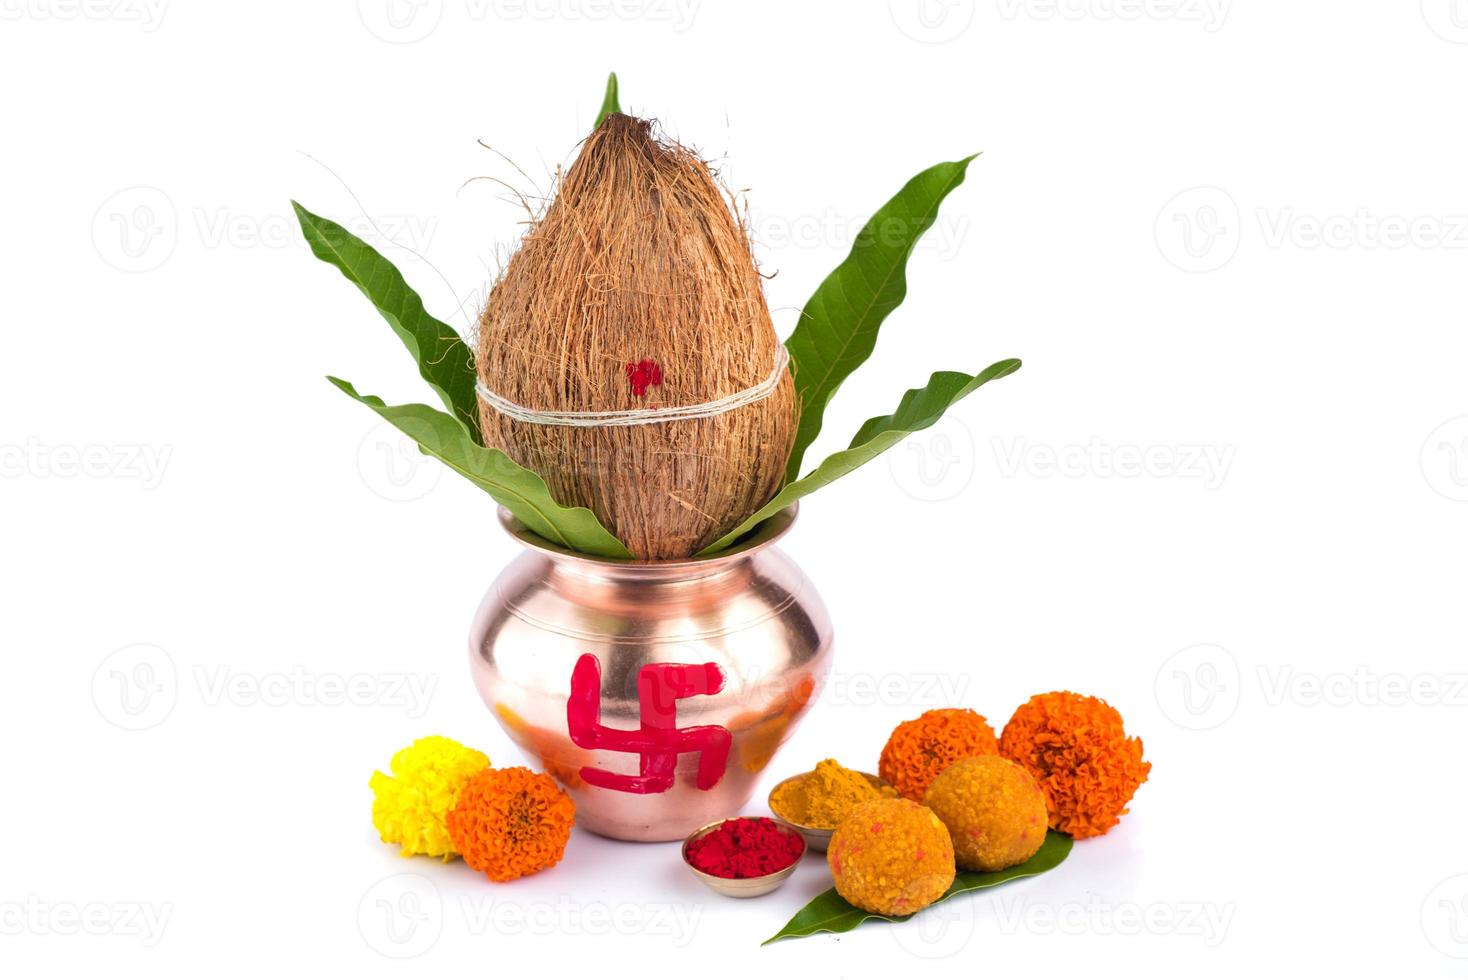 kalash de cobre con coco, hoja de mango, haldi, kumkum y dulces con decoración de flores de caléndula sobre un fondo blanco. esencial en puja hindú. foto